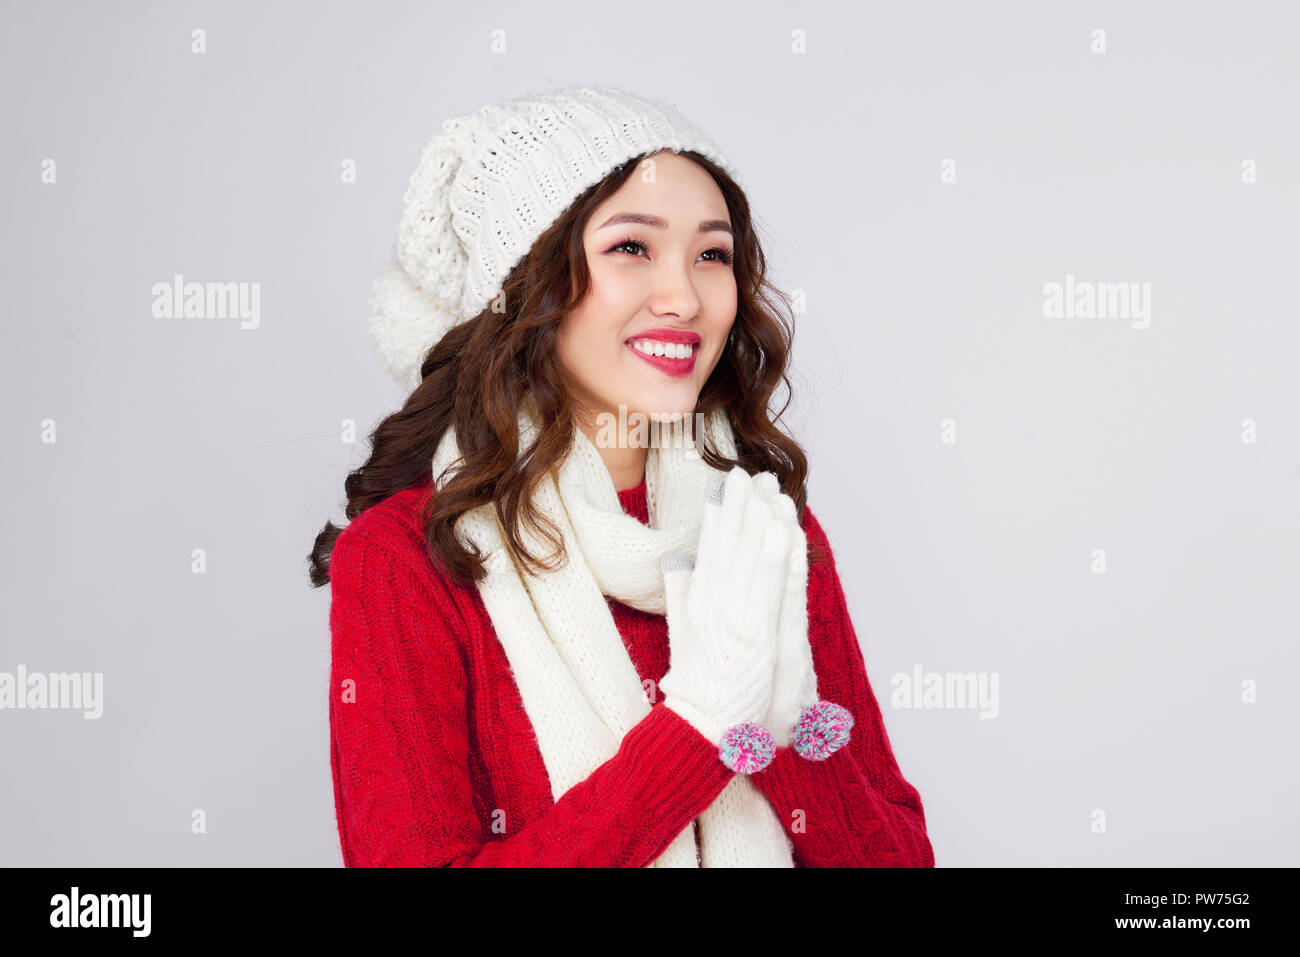 Beautiful smiling mannequin de visage avec des lèvres rouges dans des vêtements chauds Banque D'Images